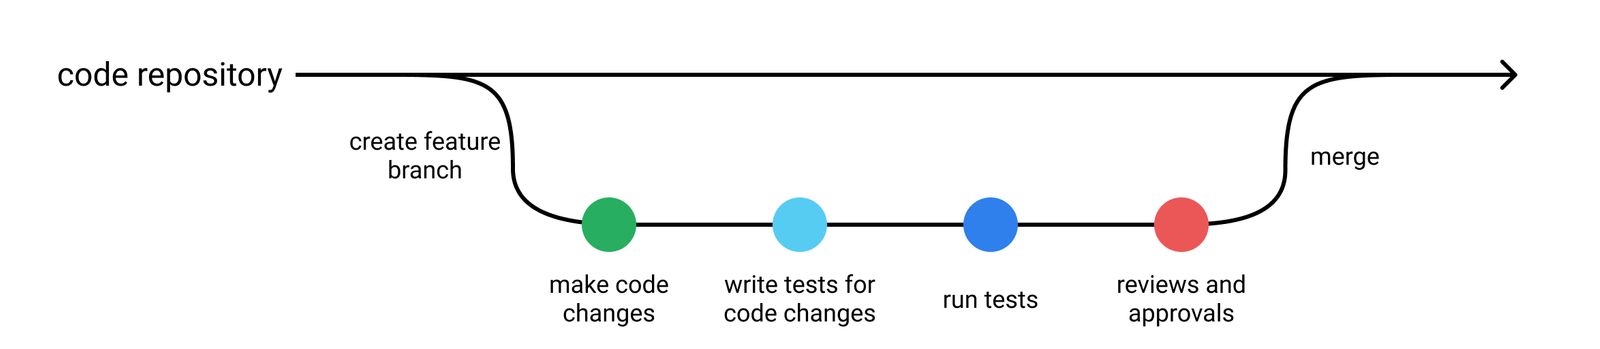 Typical SE development workflow